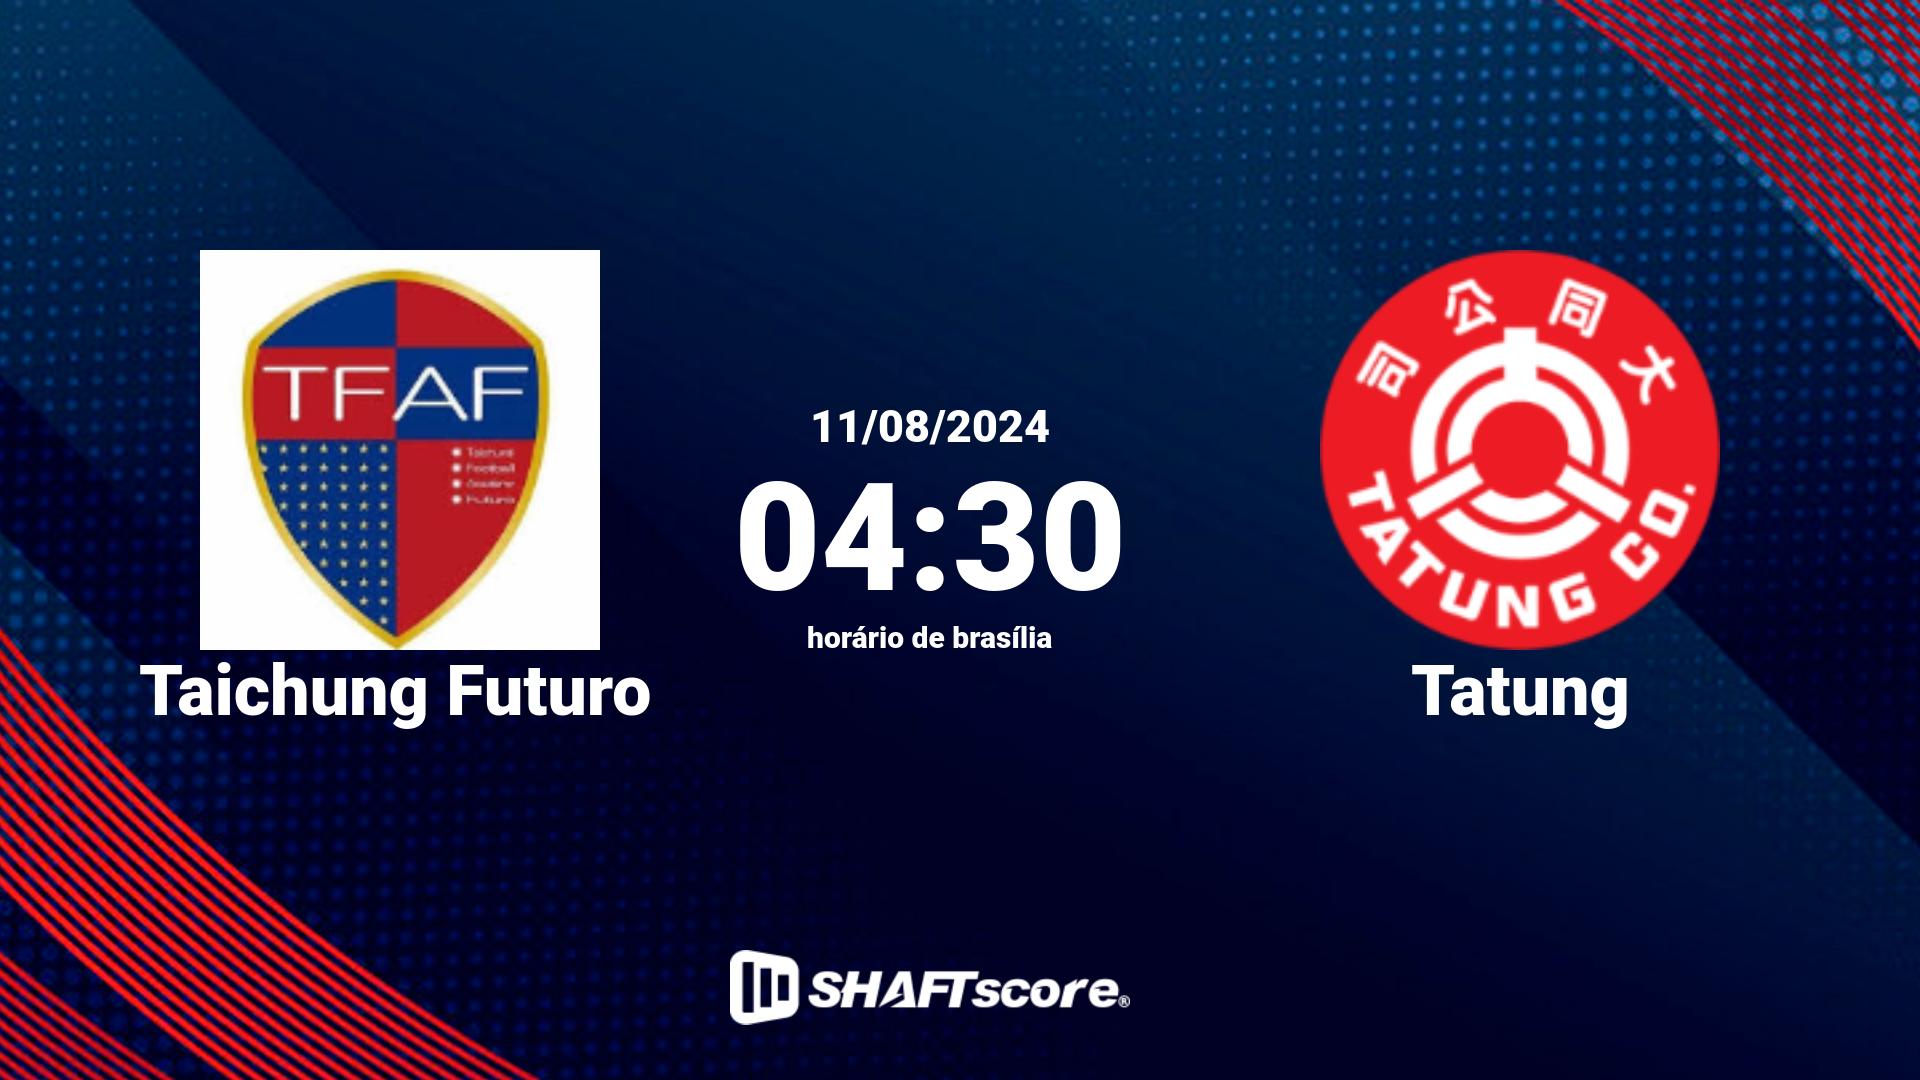 Estatísticas do jogo Taichung Futuro vs Tatung 11.08 04:30